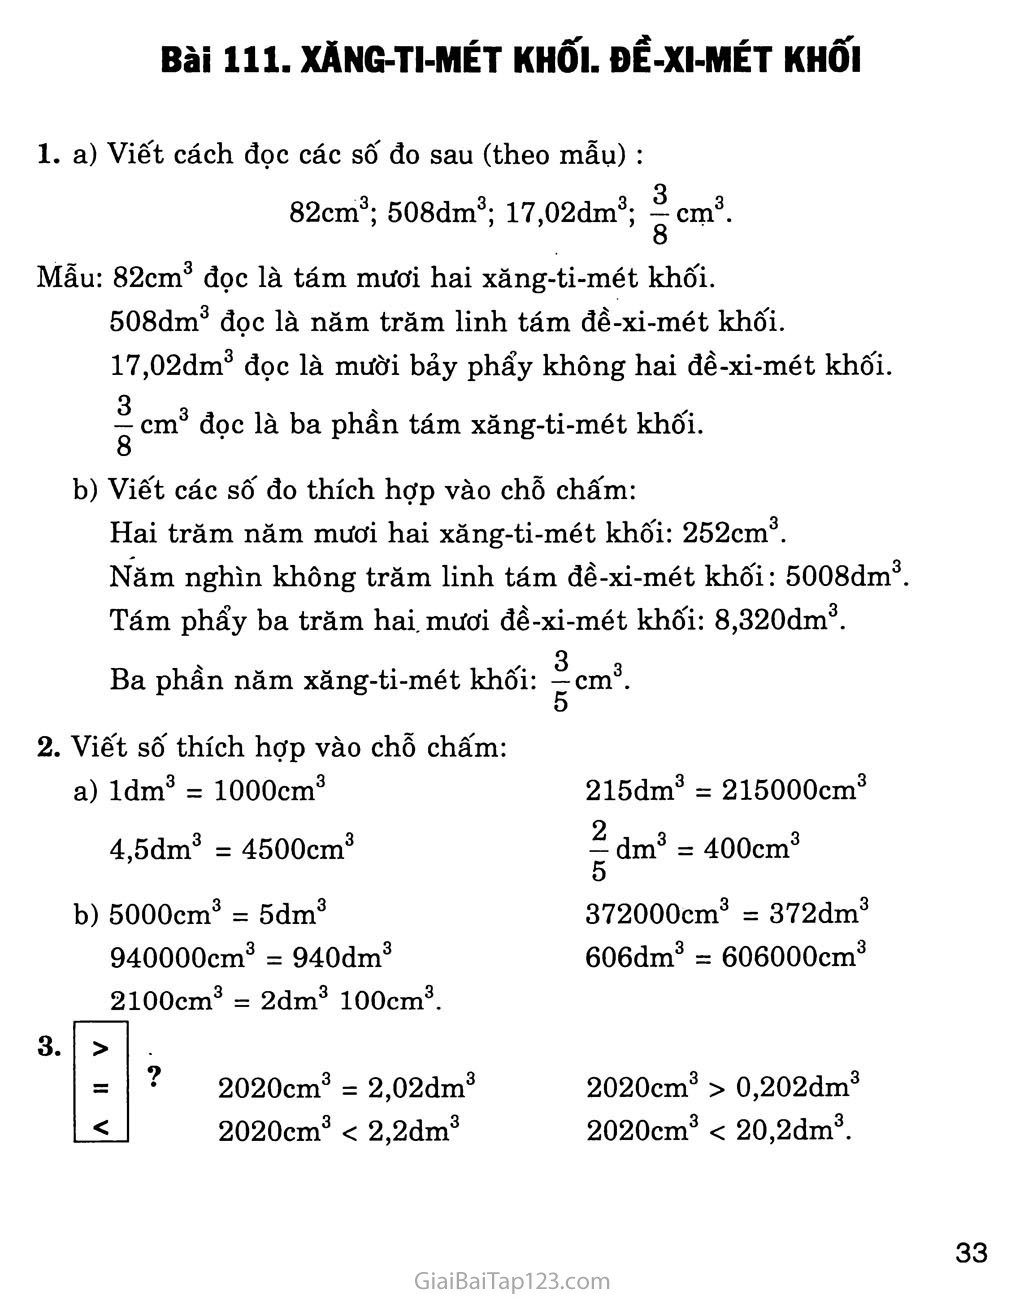 Bài 111: Xăng - ti - mét khối. Đề - xi - mét khối trang 1